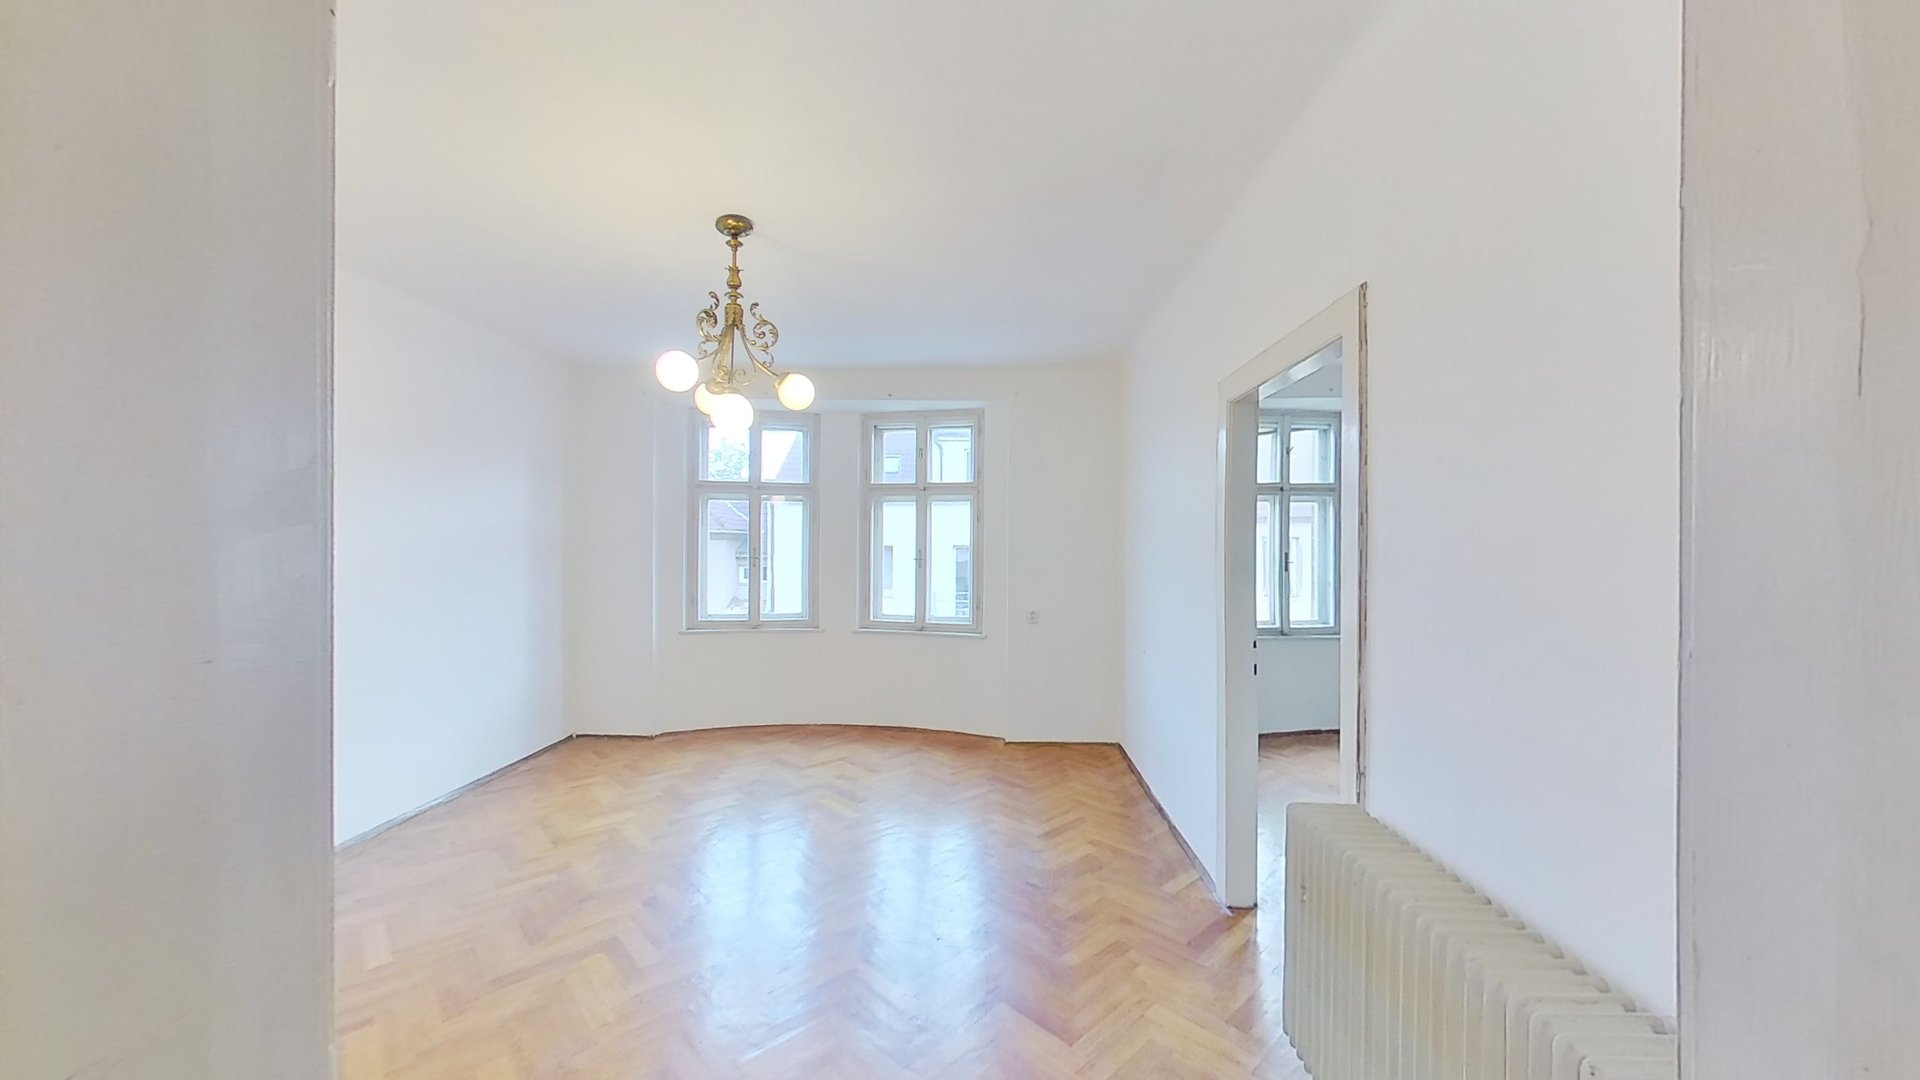 Prodej rodinného domu 250 m2 Tyršova, Brno